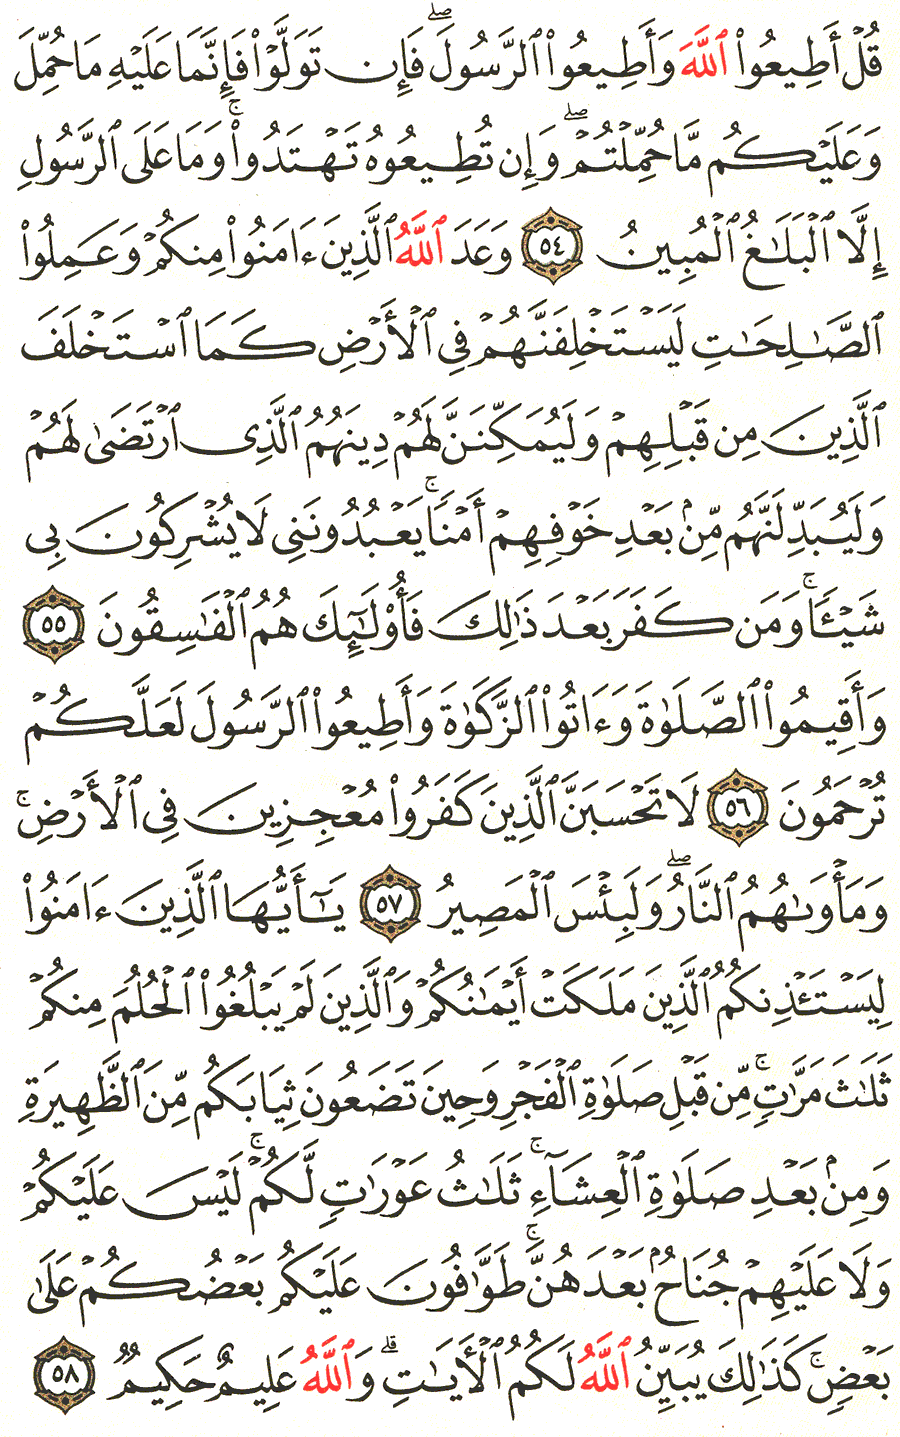 الصفحة رقم 357  من القرآن الكريم مكتوبة من المصحف